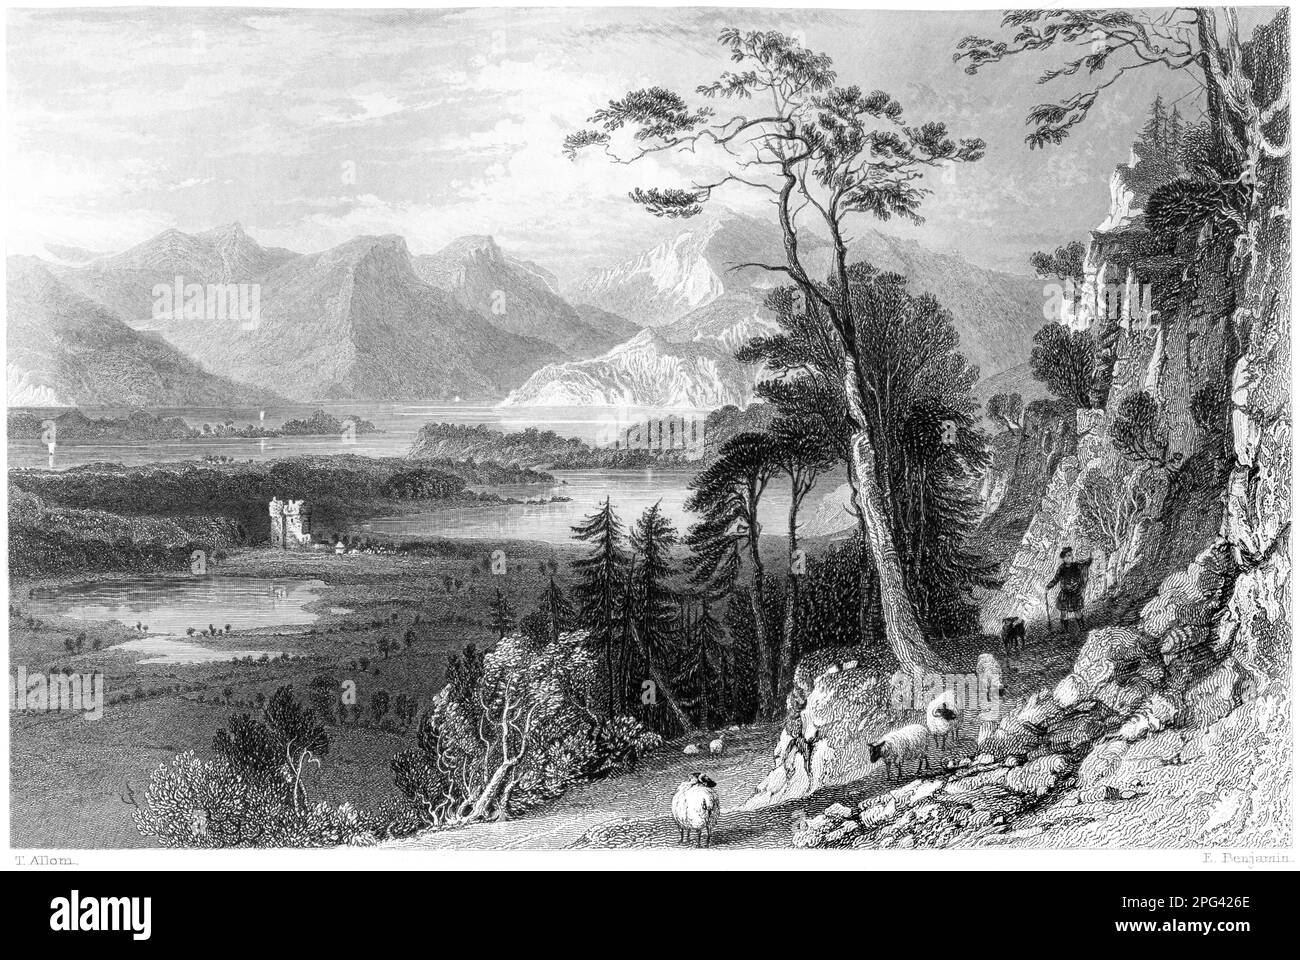 Eine Gravur von Loch Creran mit Bercaldine (Barcaldine) Castle, Argyleshire, Schottland, Großbritannien, gescannt mit hoher Auflösung aus einem 1840 gedruckten Buch. Stockfoto